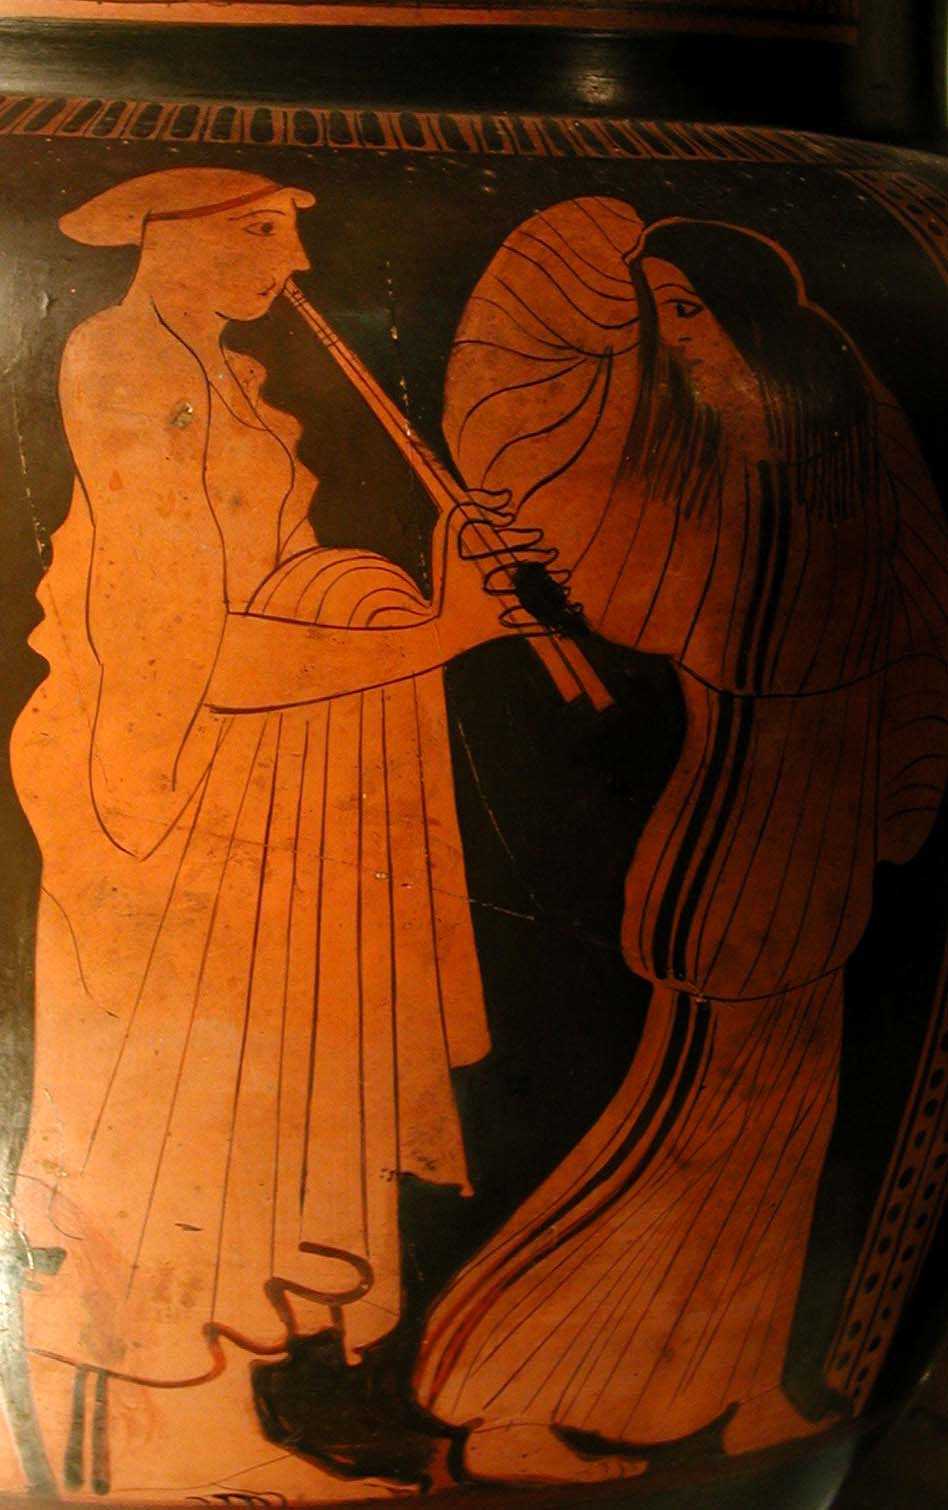 Ignoto (scuola attica), Culto di Dioniso (fine del V secolo a.C.), pittura vascolare a figure rosse su fondo nero, cm 48x37,5. Vercelli, Museo Leone, inv. no. 978/563.